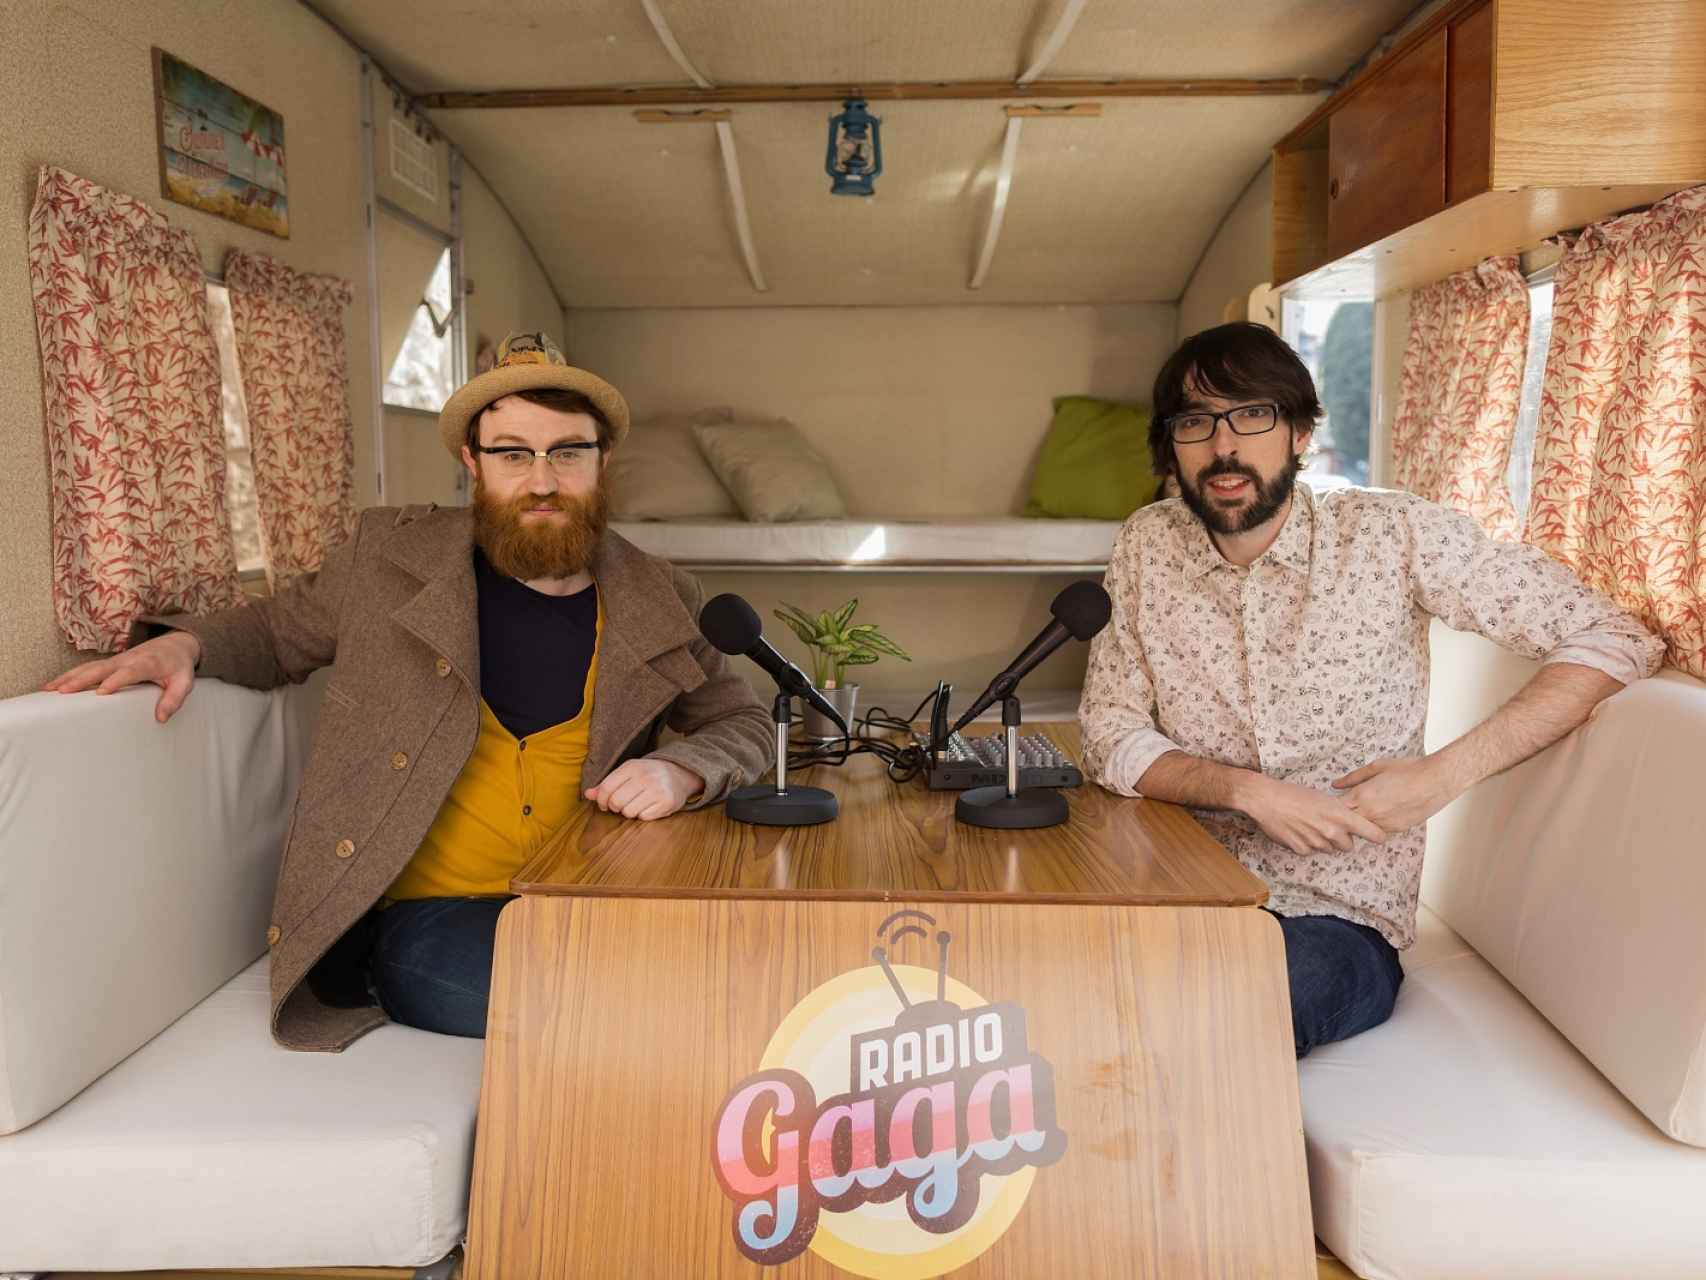 Manuel Burque y Radio Gaga en la caravana que mueven por toda España.